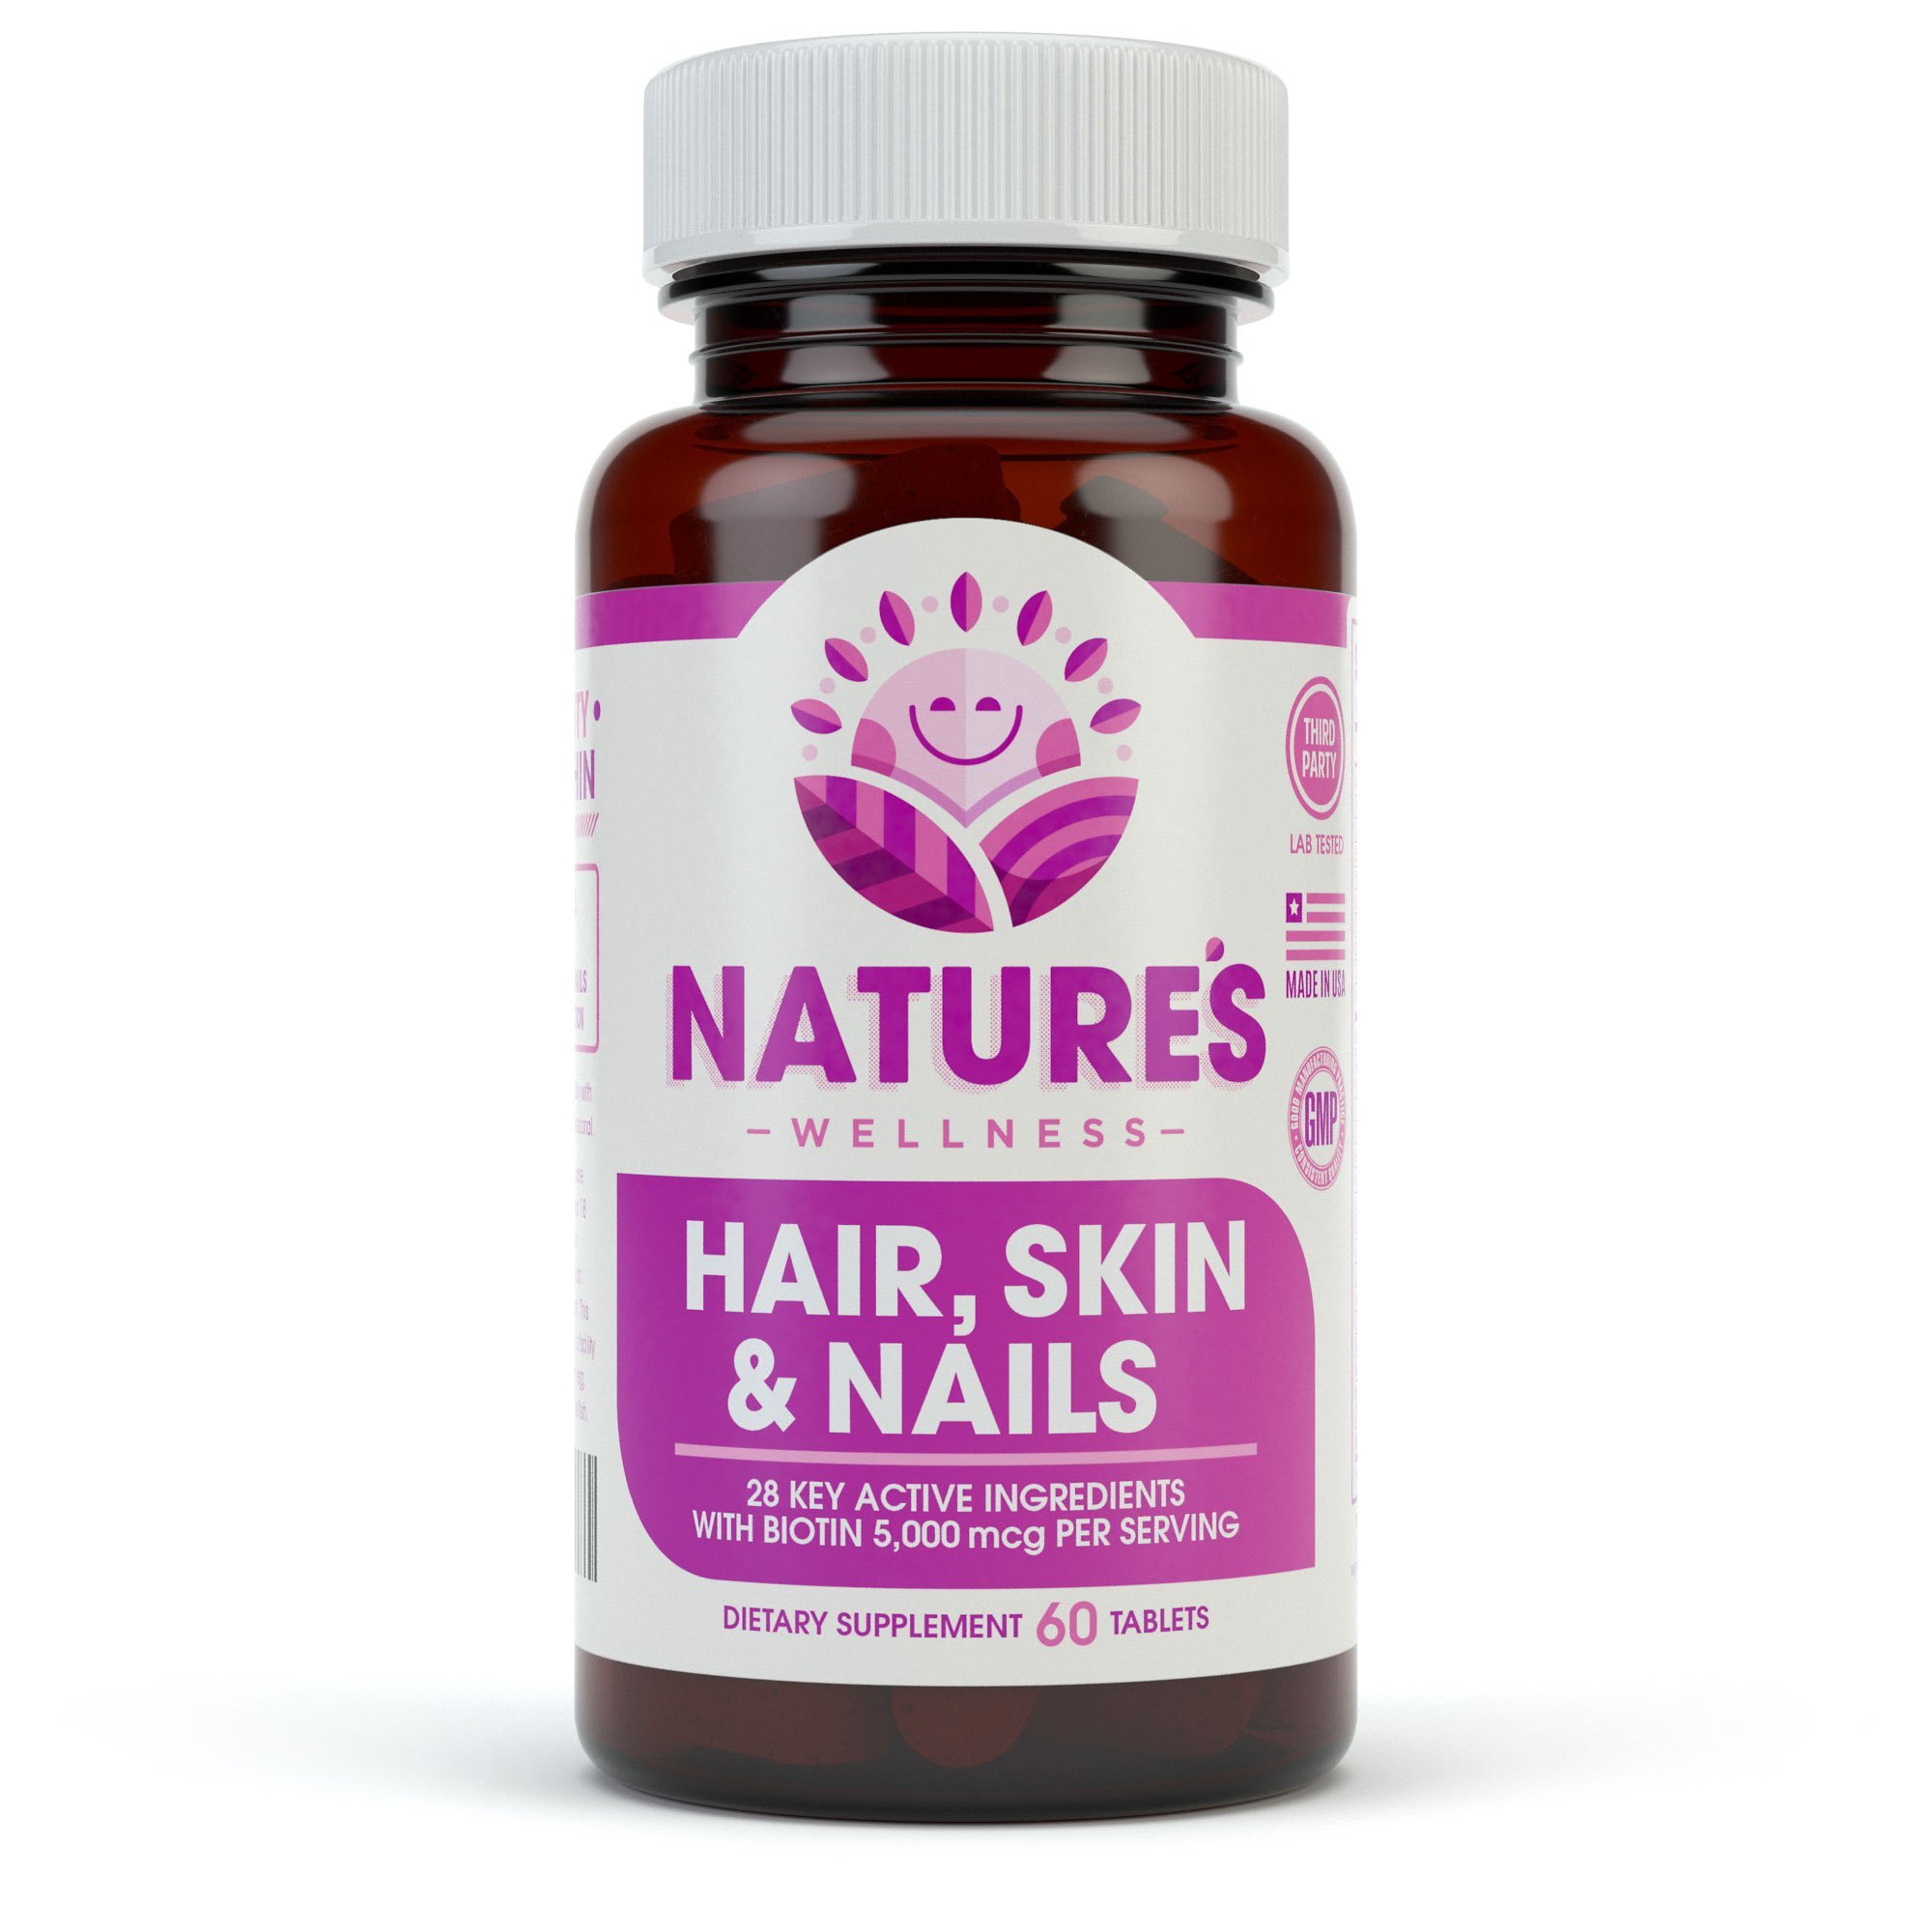 Лучшие витамины для женщин волосы ногти кожа. Hair Skin Nails витамины. БАДЫ для волос ногтей и кожи. Витамины с биотином кожа волосы ногти. Кремний витамины для волос и ногтей.